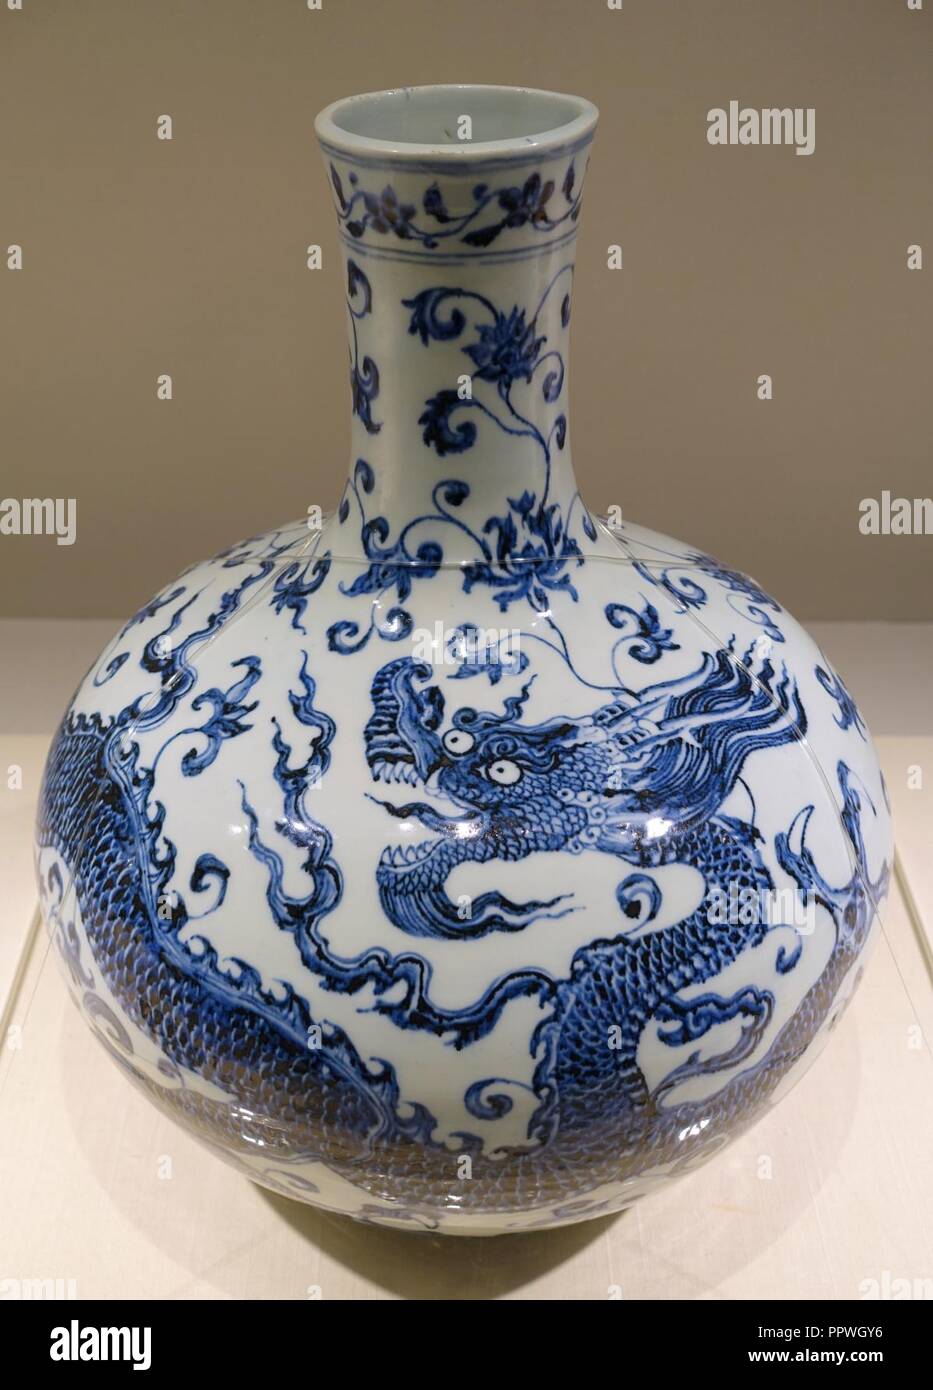 Vaso bottiglia con dragon e design arabesque, Cina, Jingdezhen forno, dinastia Ming, periodo Yongle, 1403-1424 annuncio, blu e bianco - Foto Stock